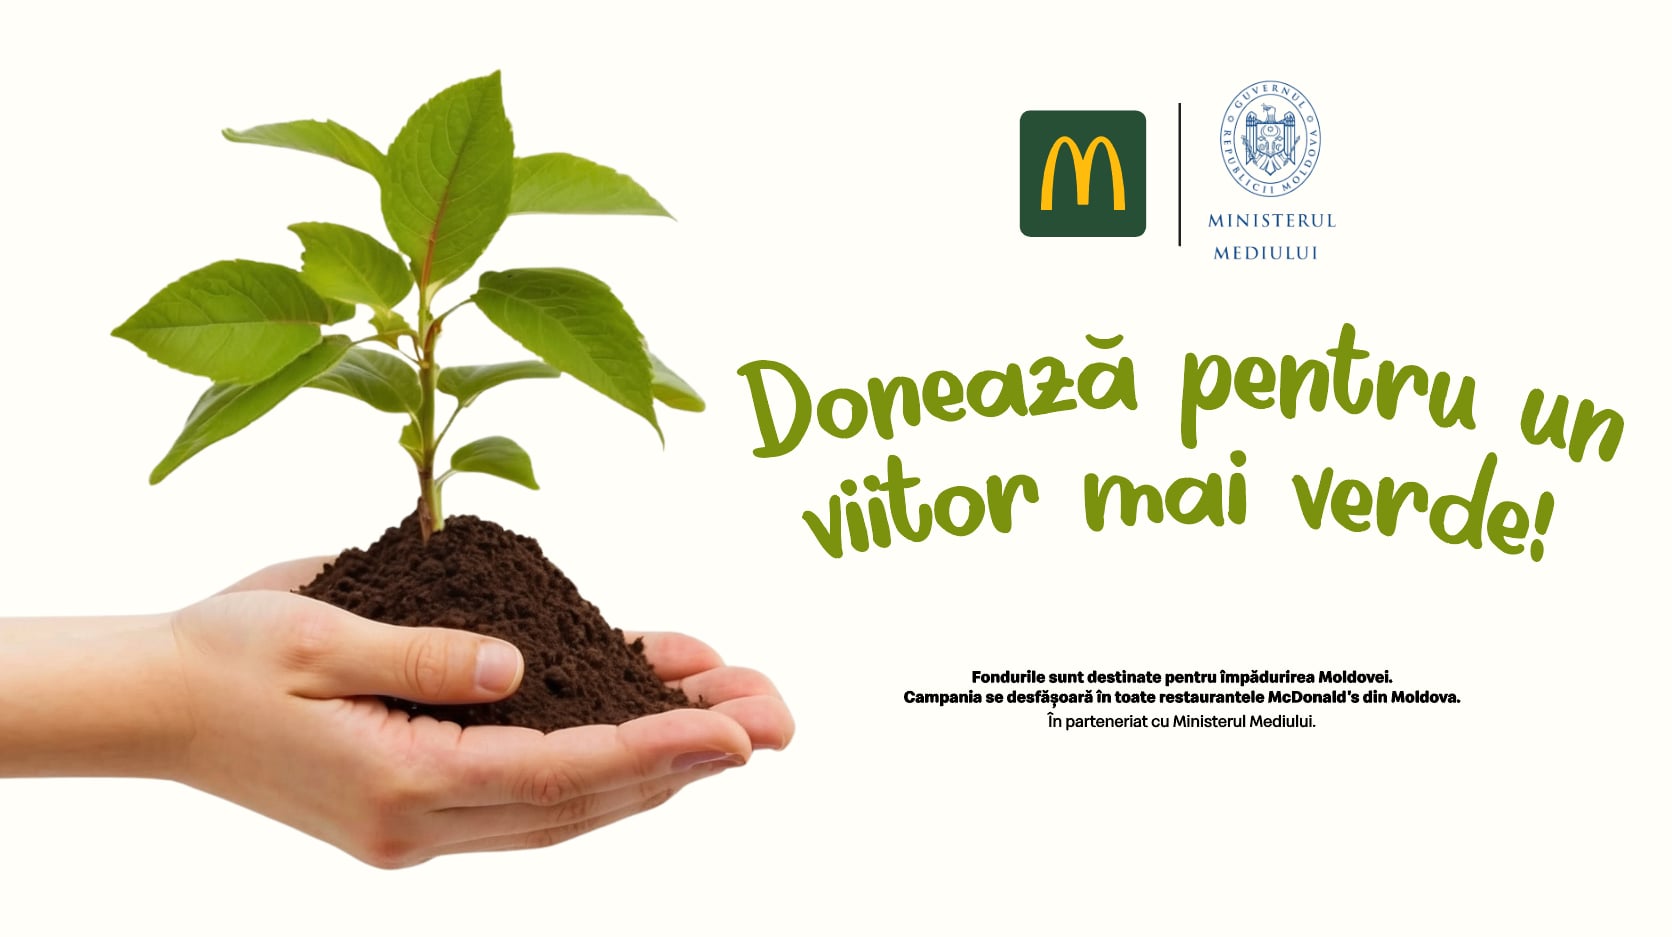 McDonald's lansează campania „Donează pentru un viitor mai verde!”